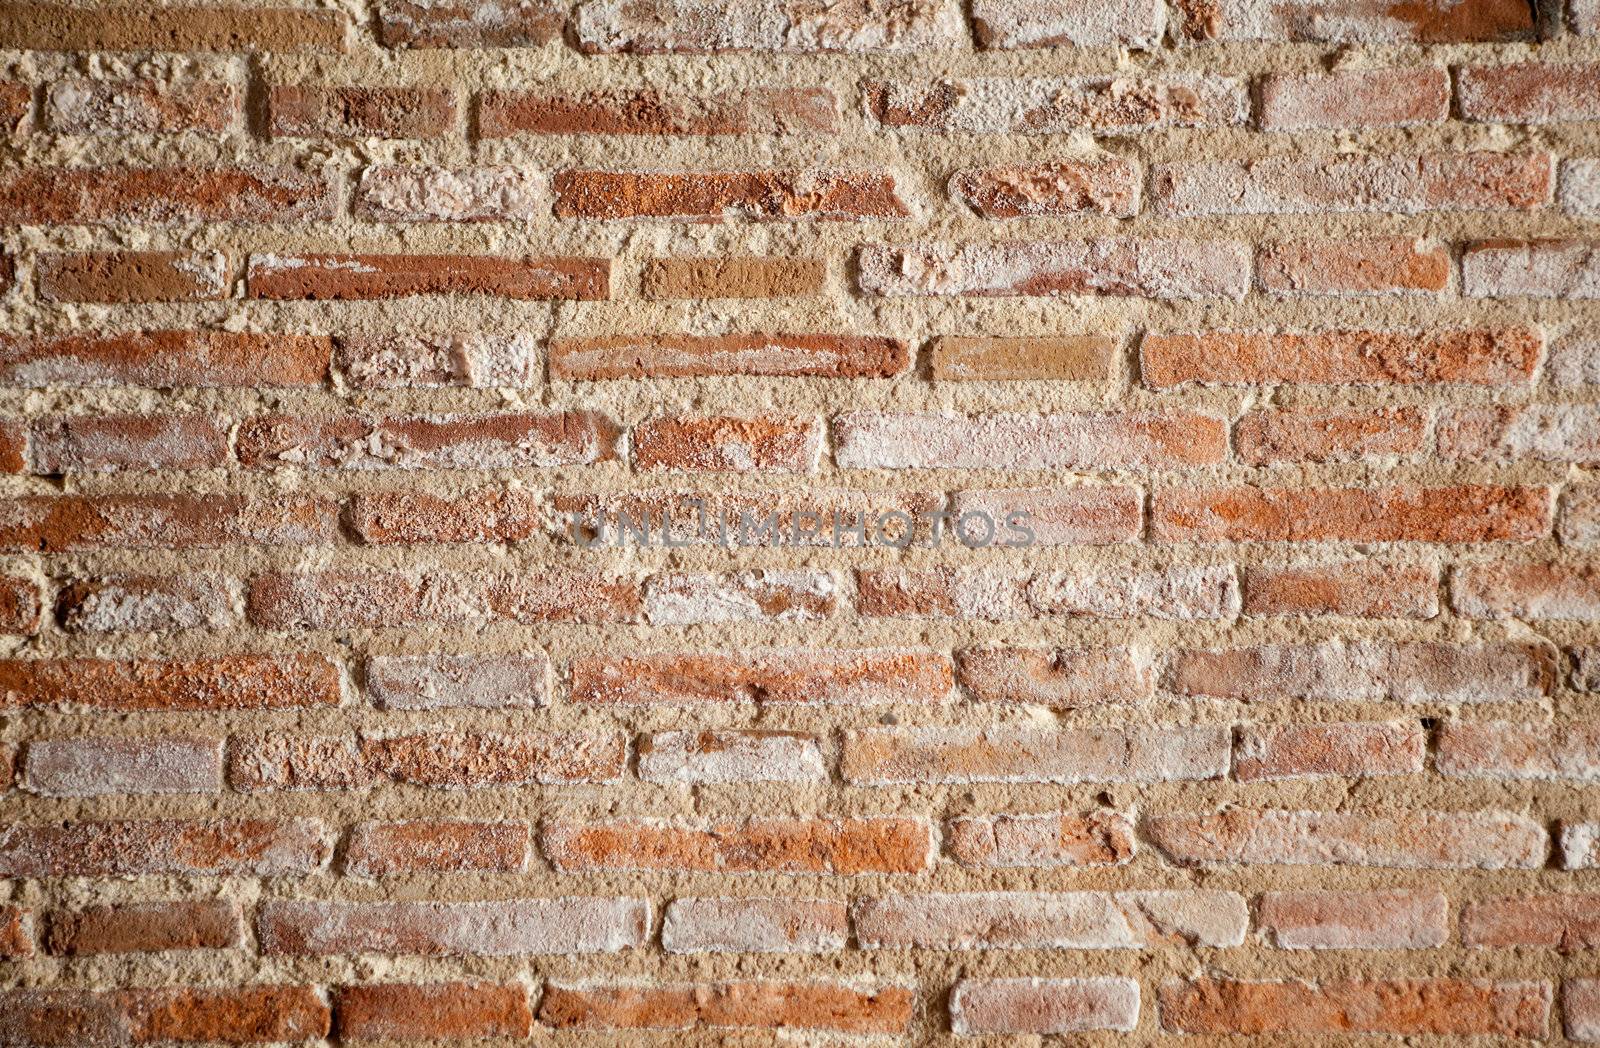 Brick wall background by carloscastilla